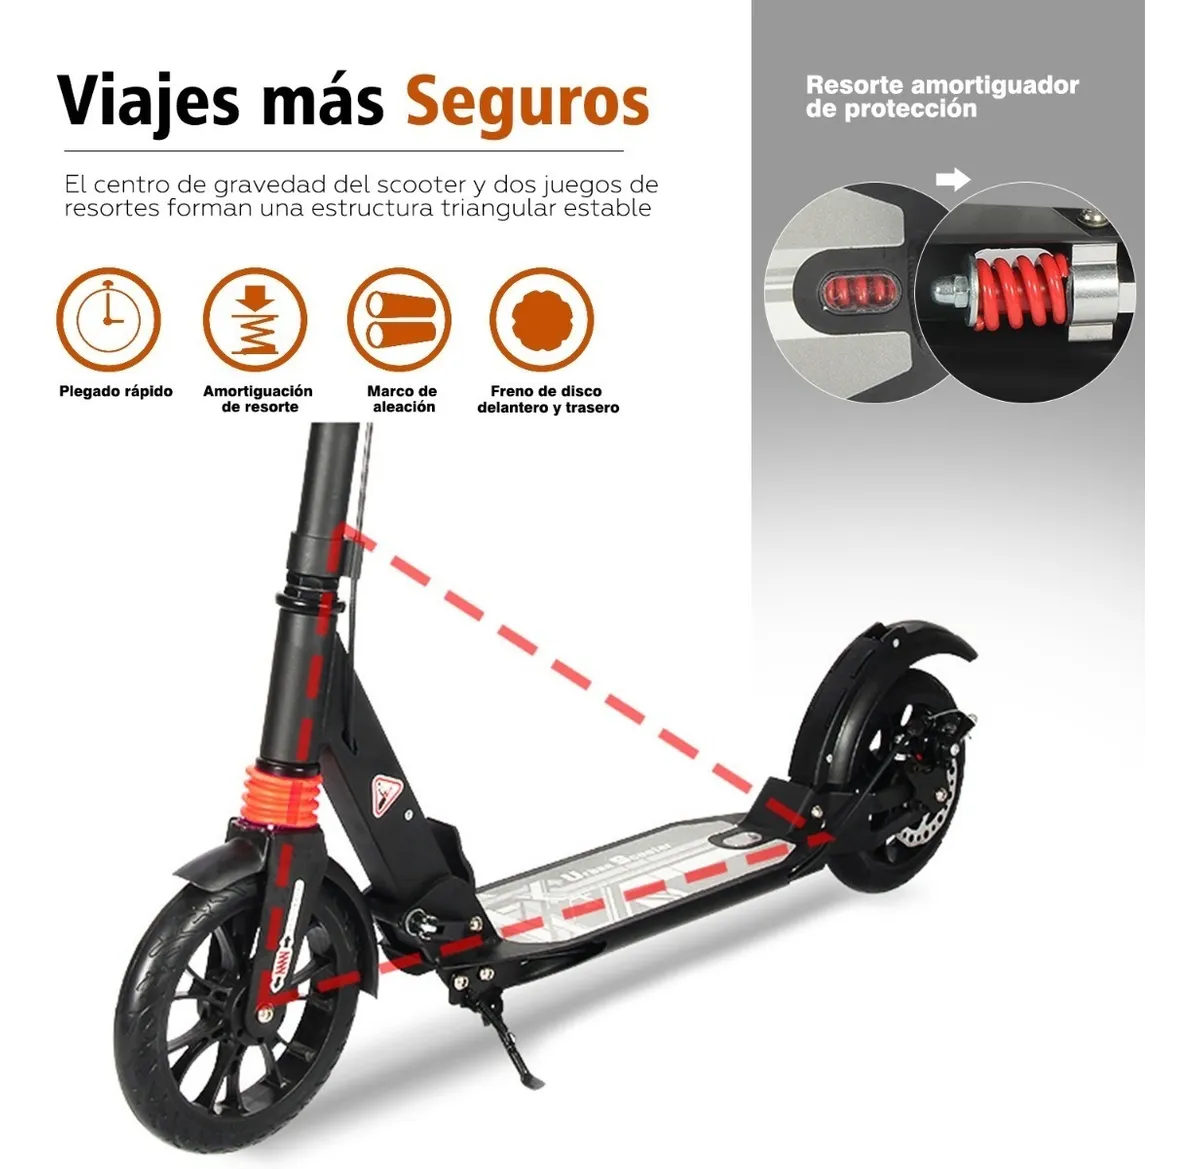 Scooter Patin Electrico Plegable - Sangkee México Envíos Rápidos y